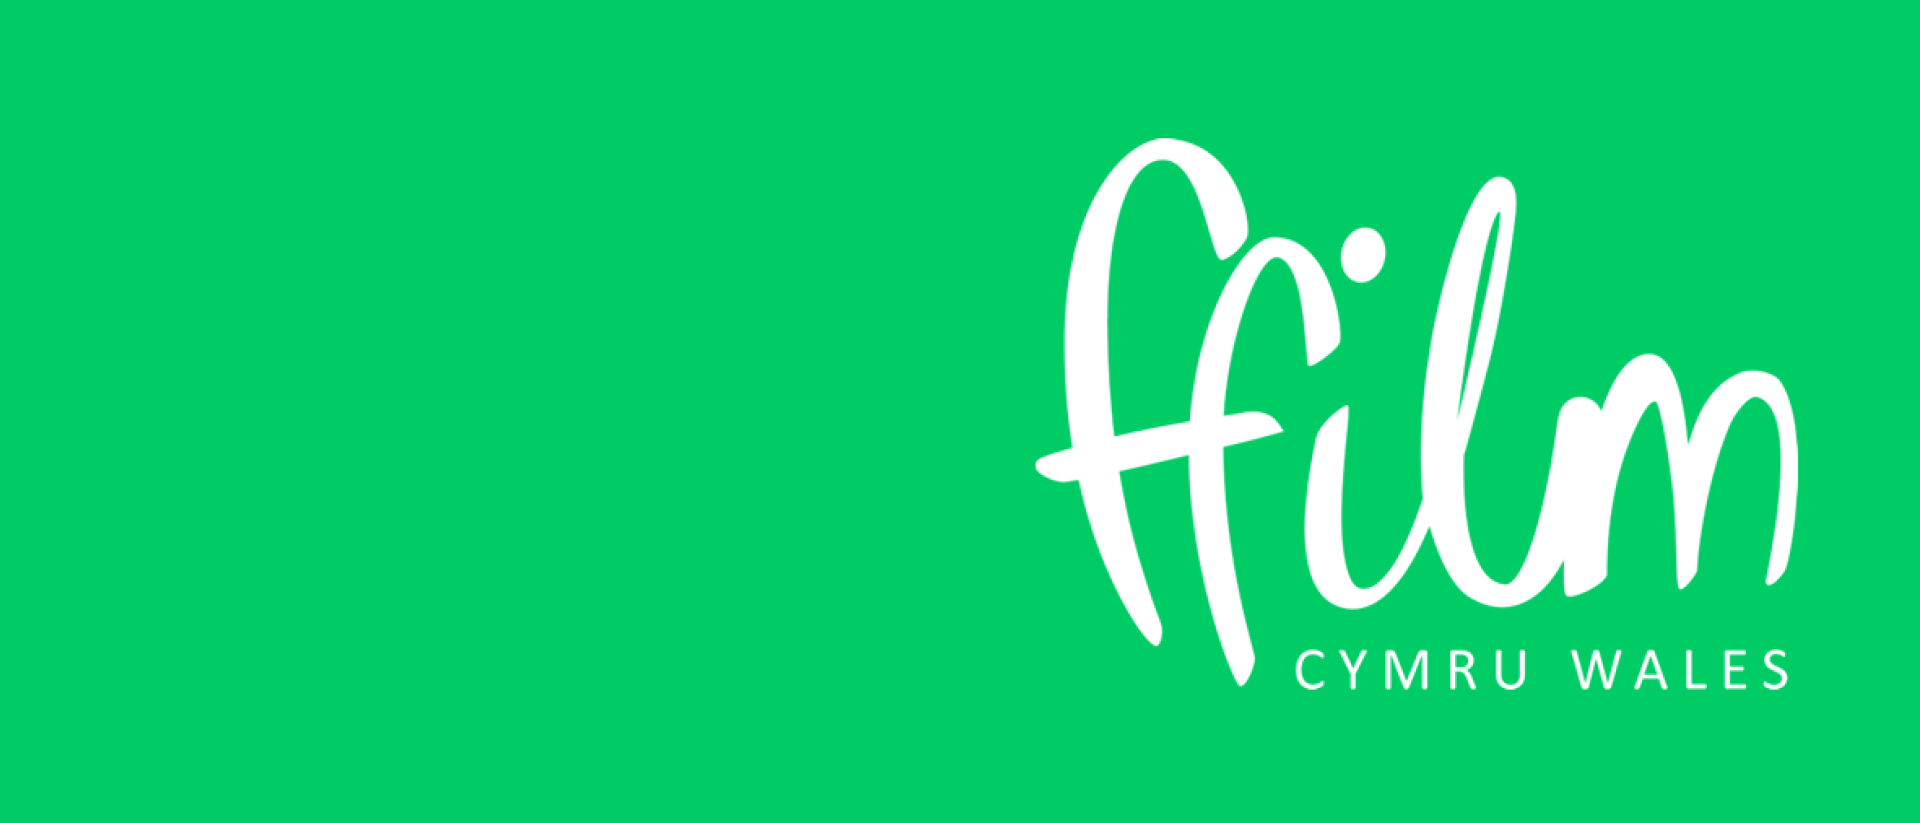 white ffilm cymru logo on a green background